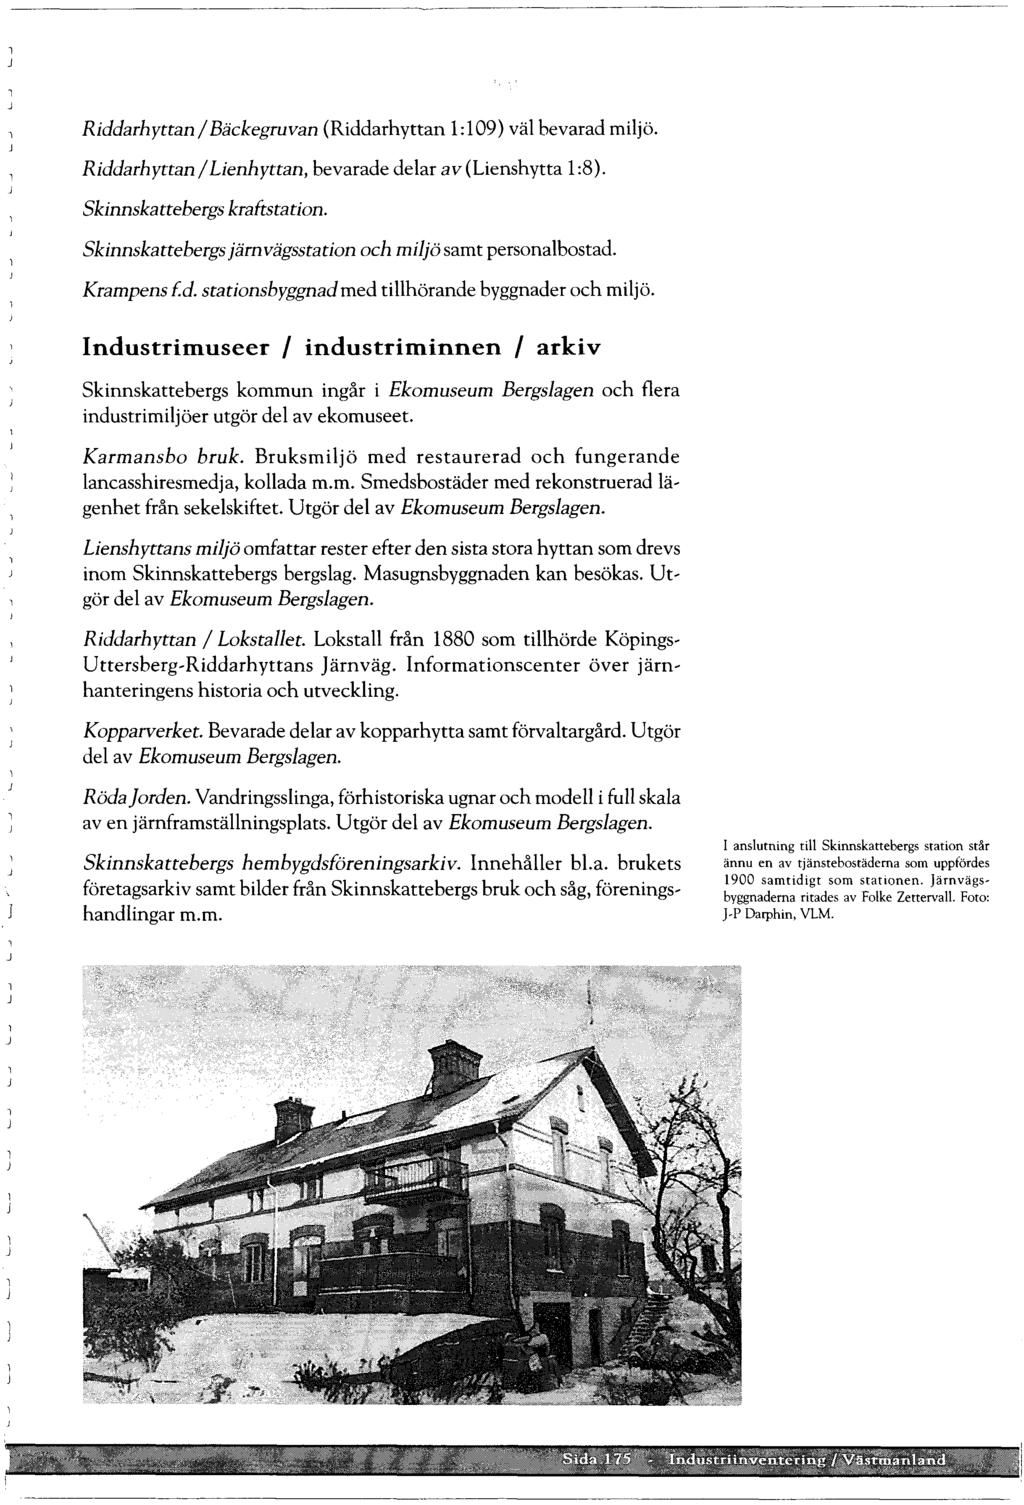 Riddarhyttan / Bäckegruvan (Riddarhyttan 1:109) vä bevarad mijö. Riddarhyttan / Lienhyttan, bevarade dear av (Lienshytta 1:8). Skinnskattebergs kraftstation.